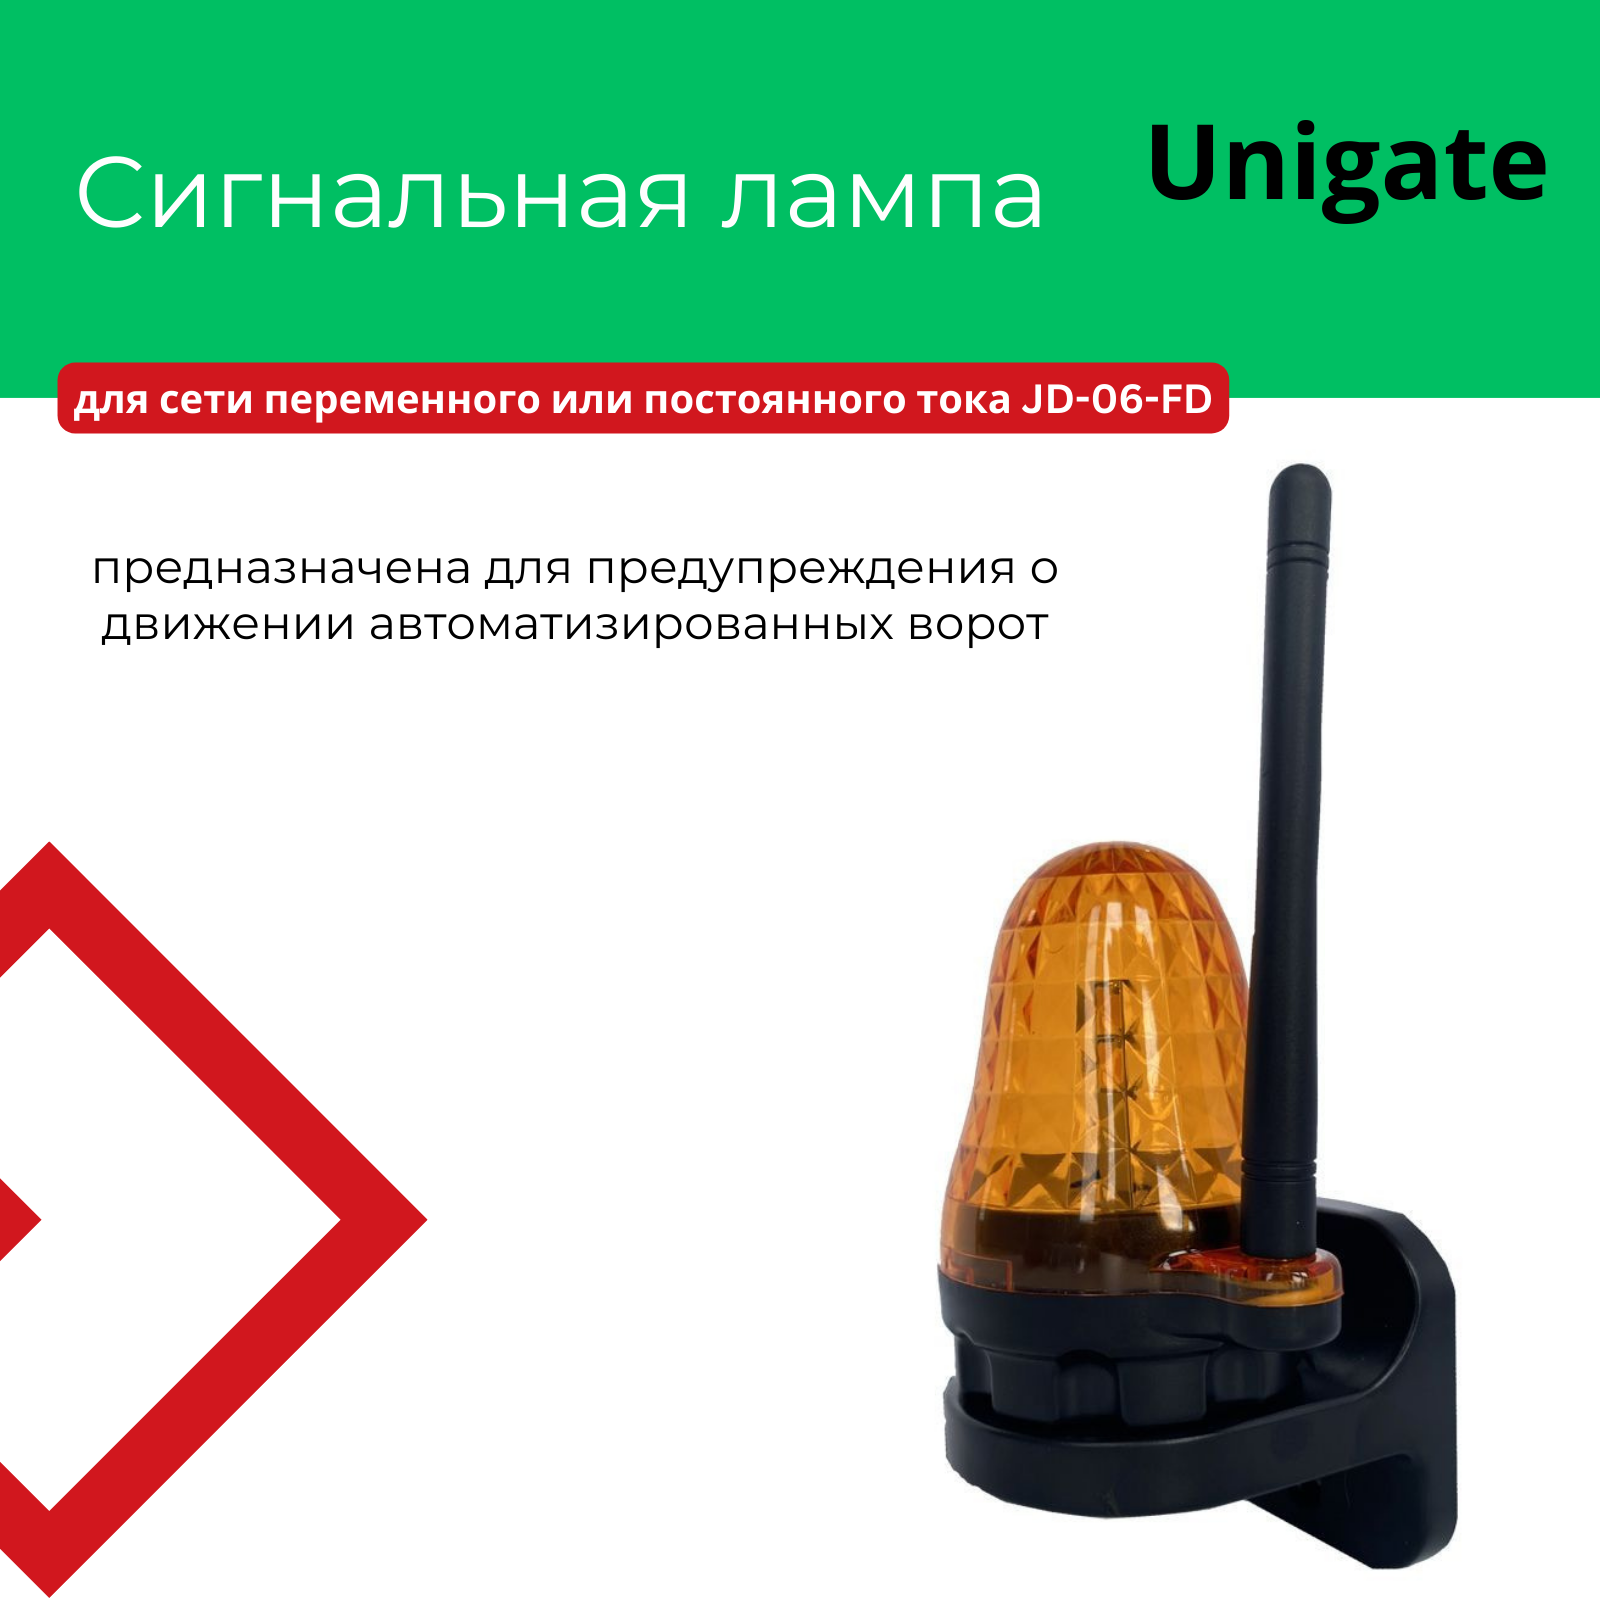 Сигнальная лампа для сети переменного или постоянного тока JD-06-FD